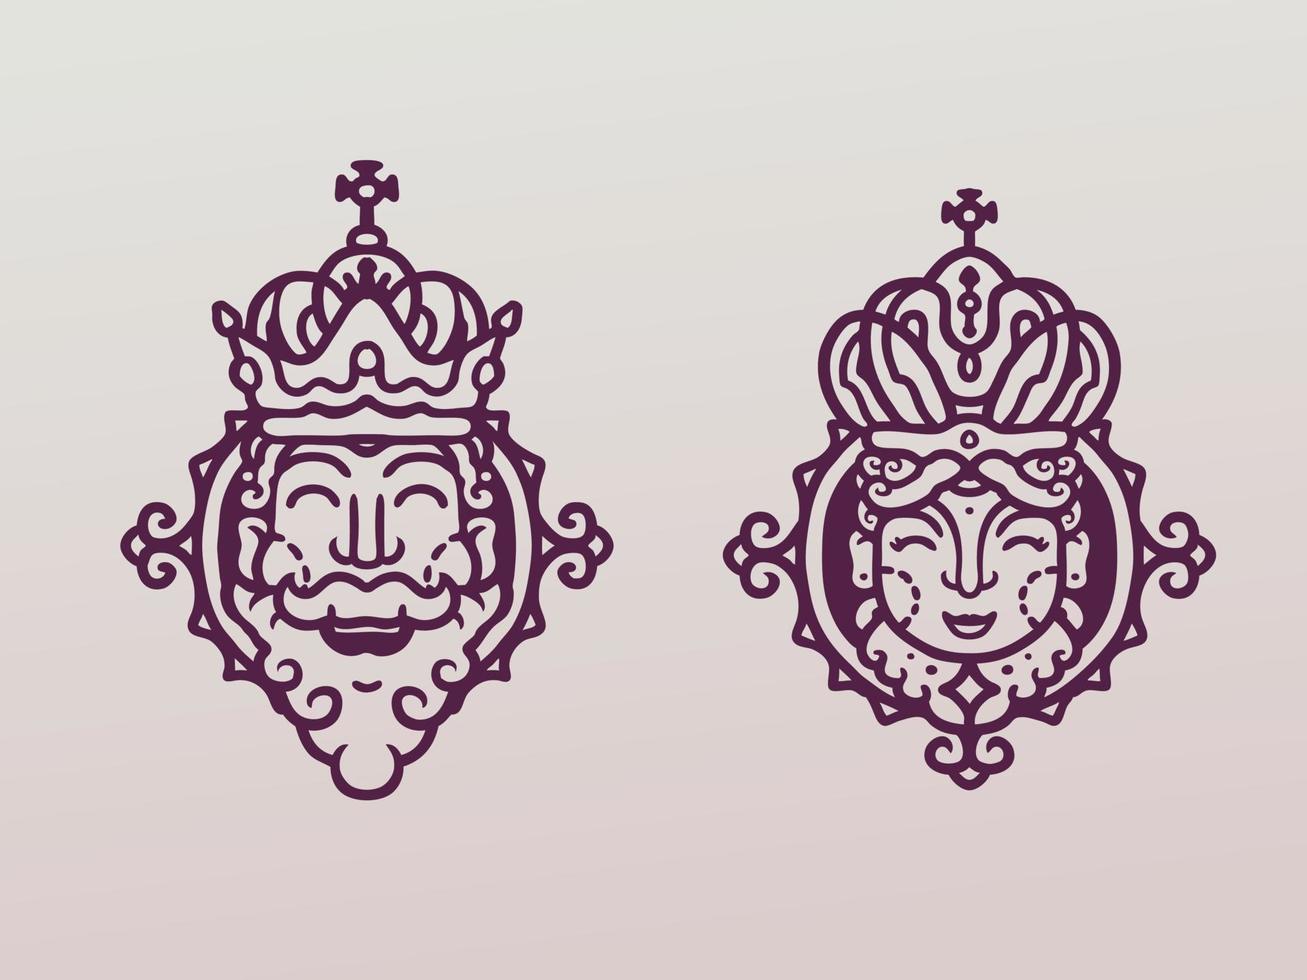 die monoline-illustration des königs und der königin vektor